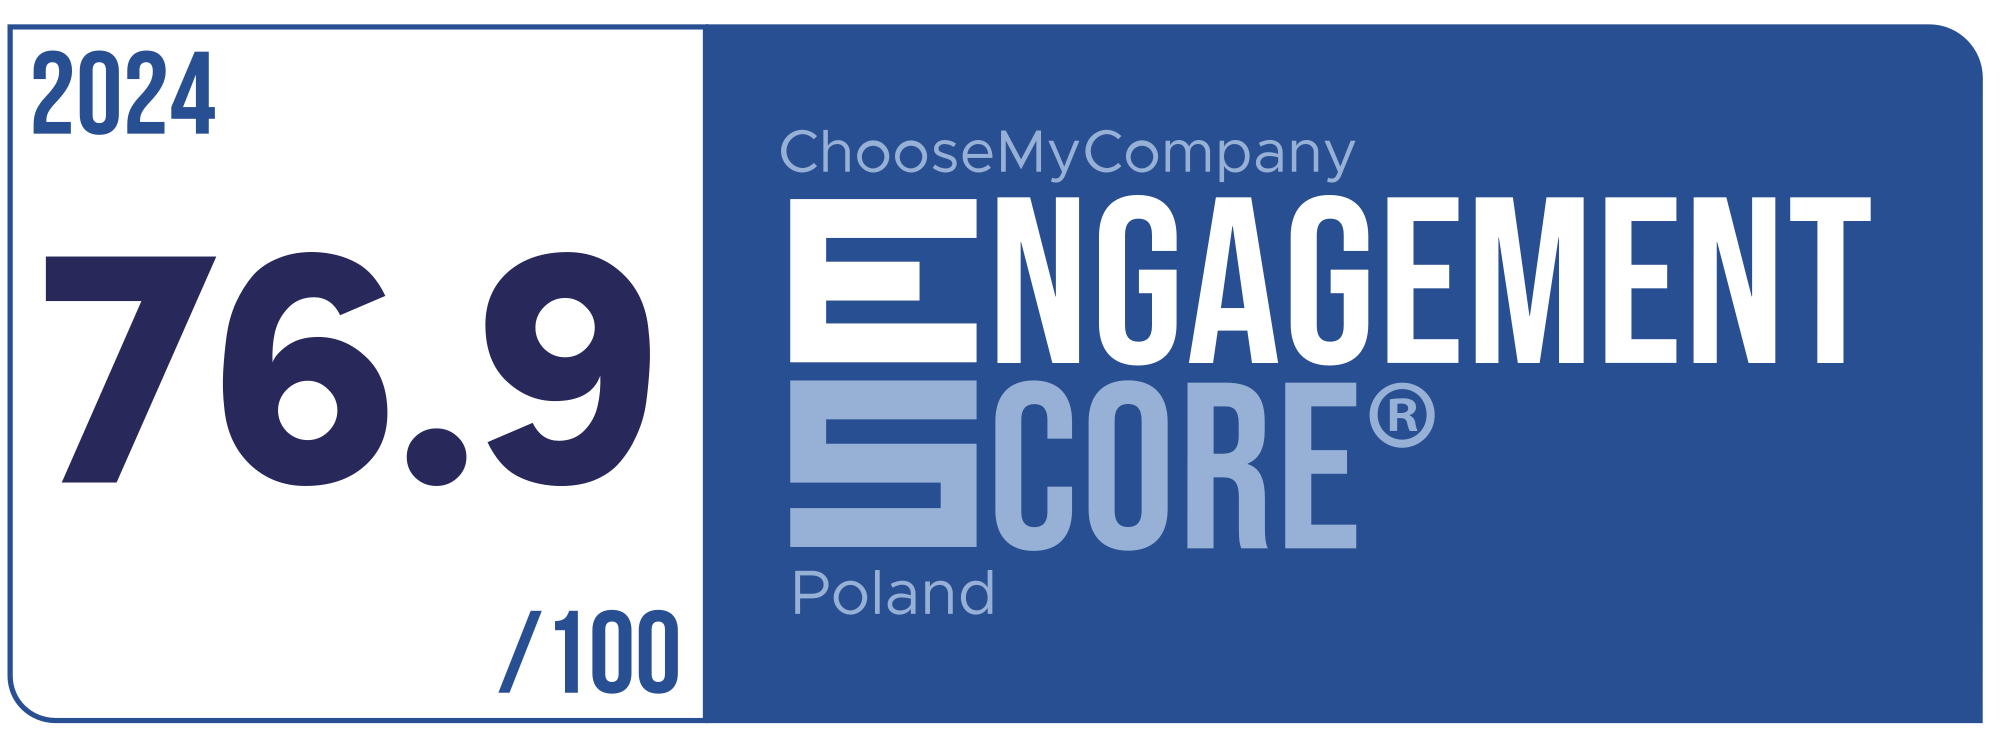 Label Engagement Score 2024 Poland